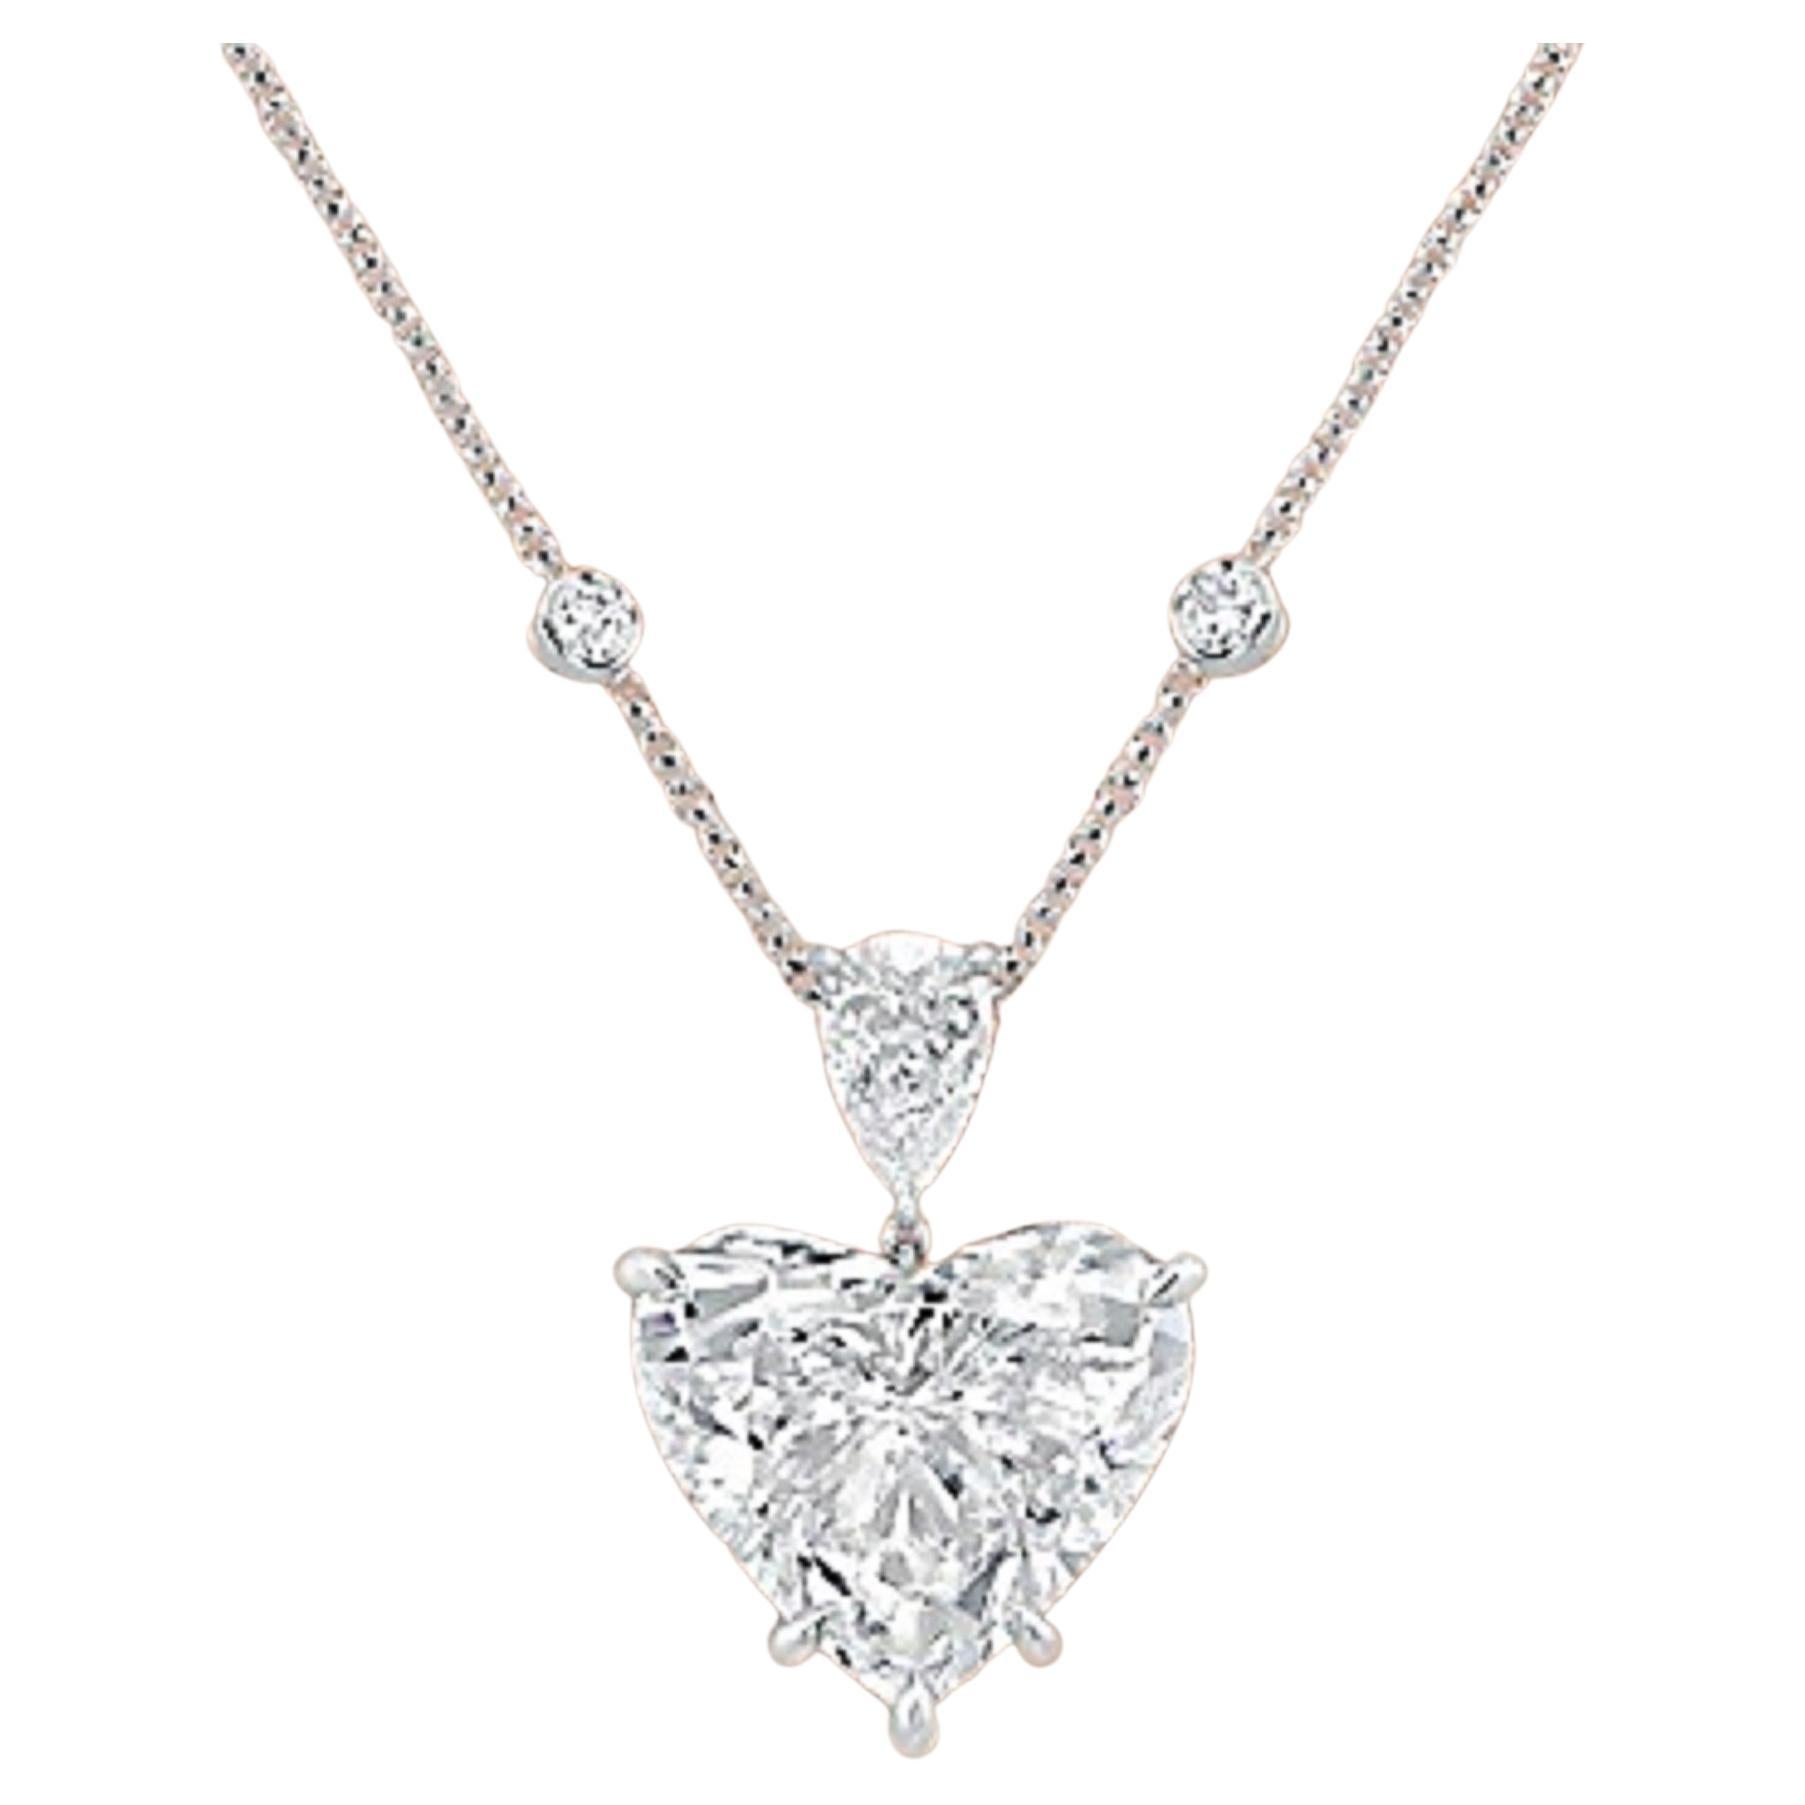 Wir präsentieren den Inbegriff der Eleganz: Die GIA-zertifizierte 10-Karat-Diamant-Halskette in Herzform aus Platin! 

Sind Sie bereit, mit unvergleichlicher Eleganz zu glänzen und zu bezaubern? Unser exquisites Meisterwerk ist das ultimative Symbol